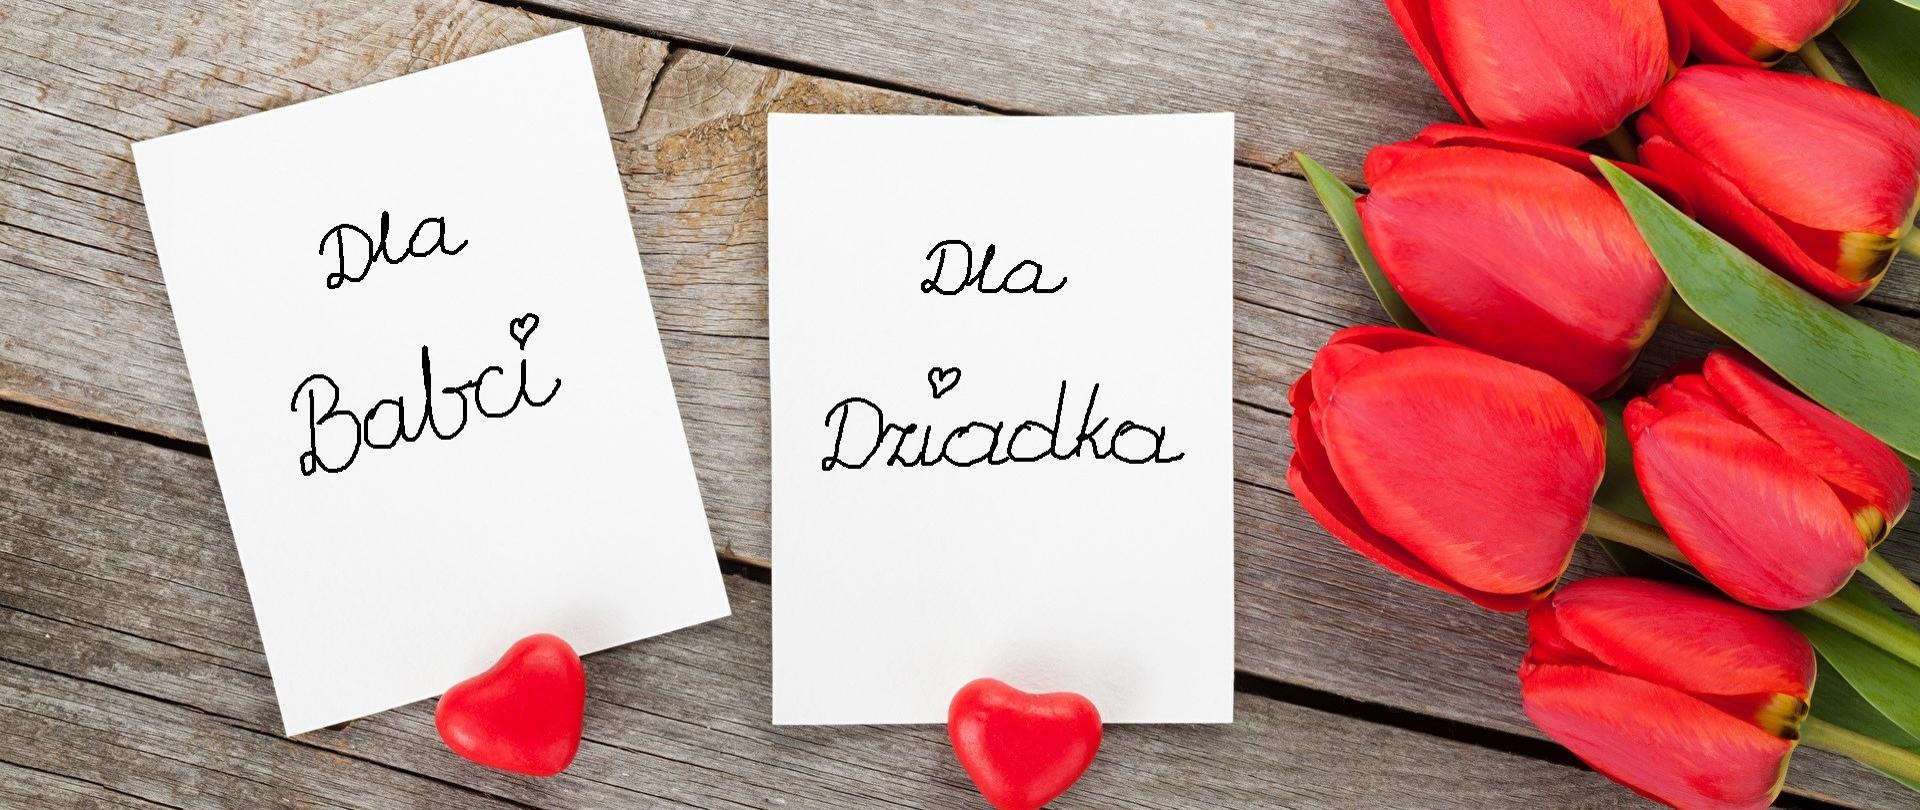 Zdjęcie przedstawia dwie białe kartki z napisem dla Babci i dziadka, czerwone tulipany i dwa czerwone serduszka. W tle stare deski.